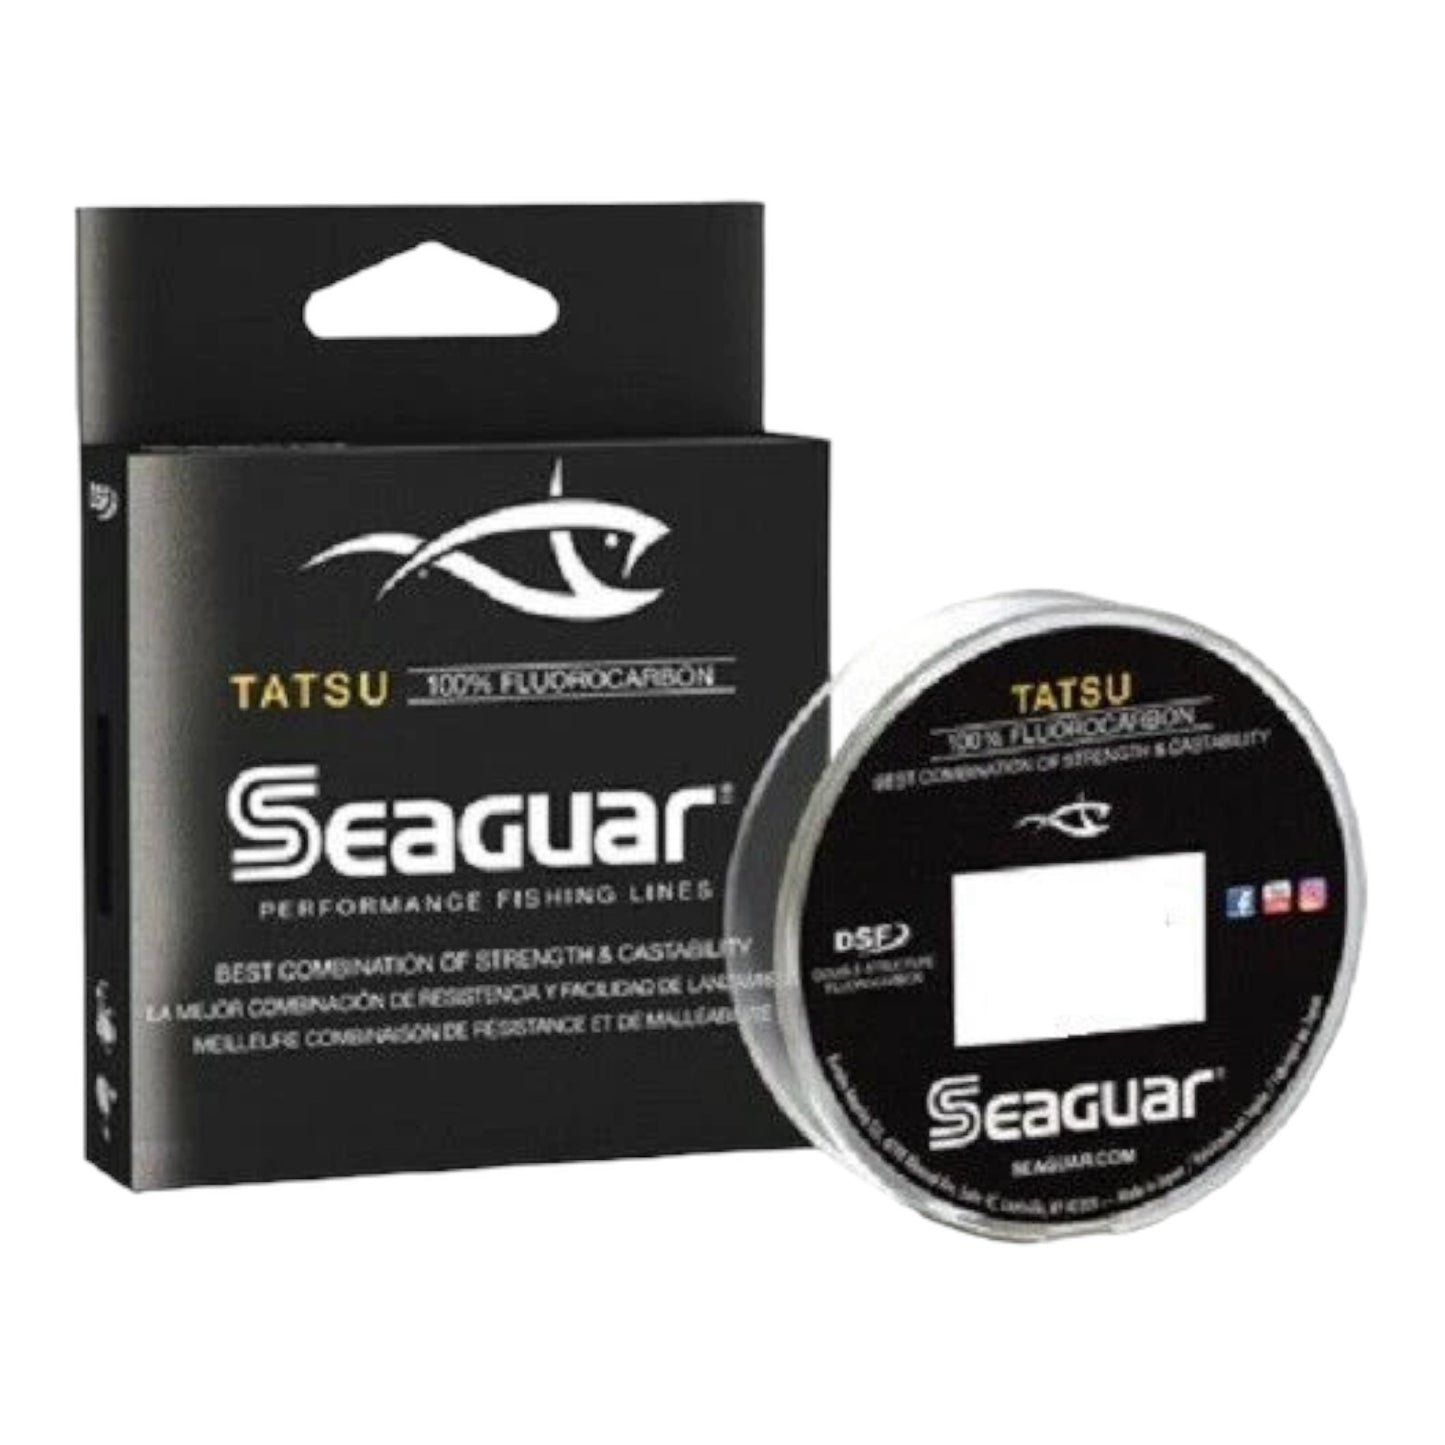 Seaguar Tatsu 100 % Fluorocarbon Line - 200 yds